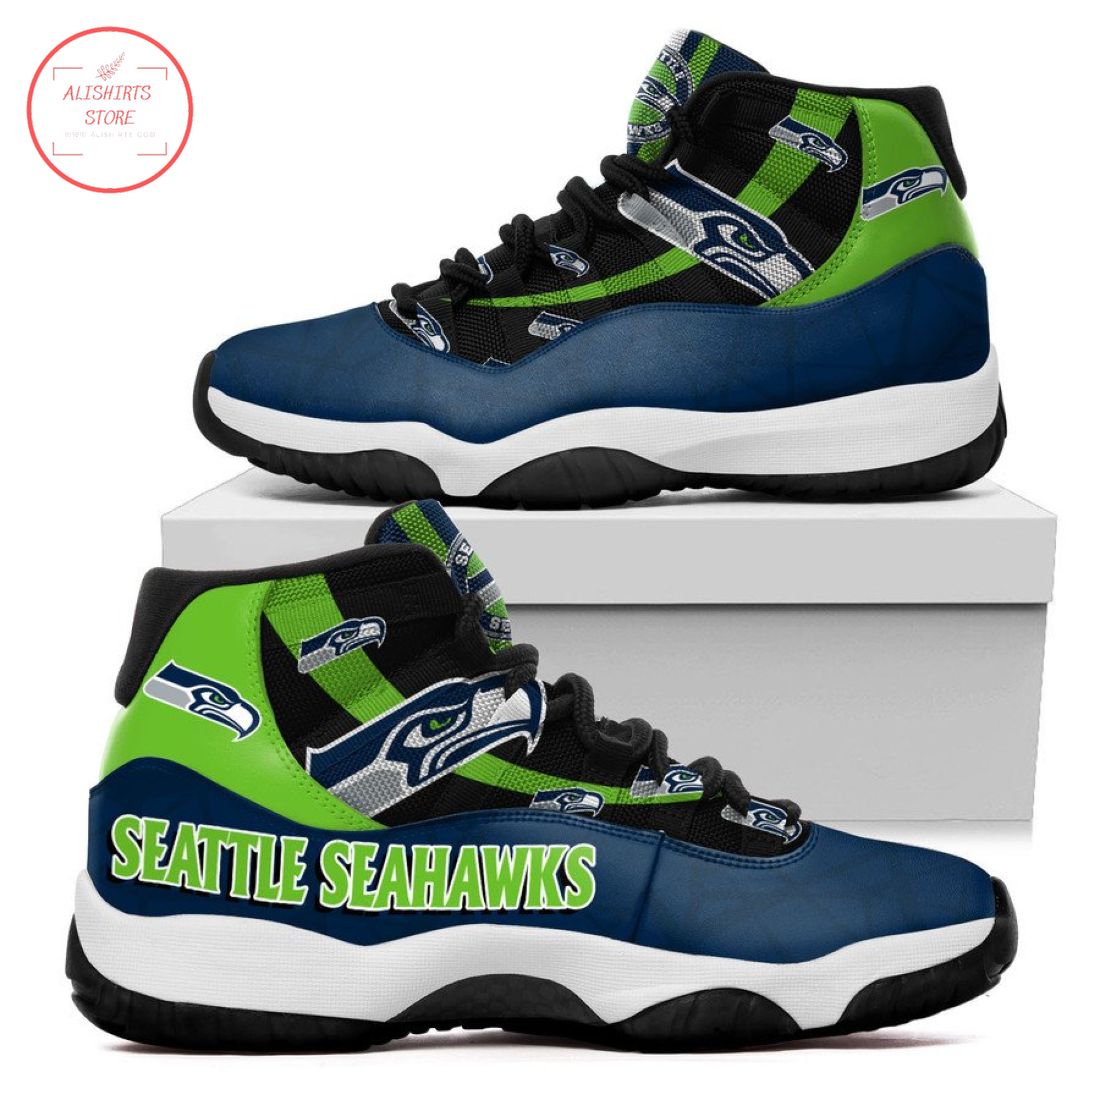 NFL Seattle Seahawks New Air Jordan 11 Sneakers Shoes